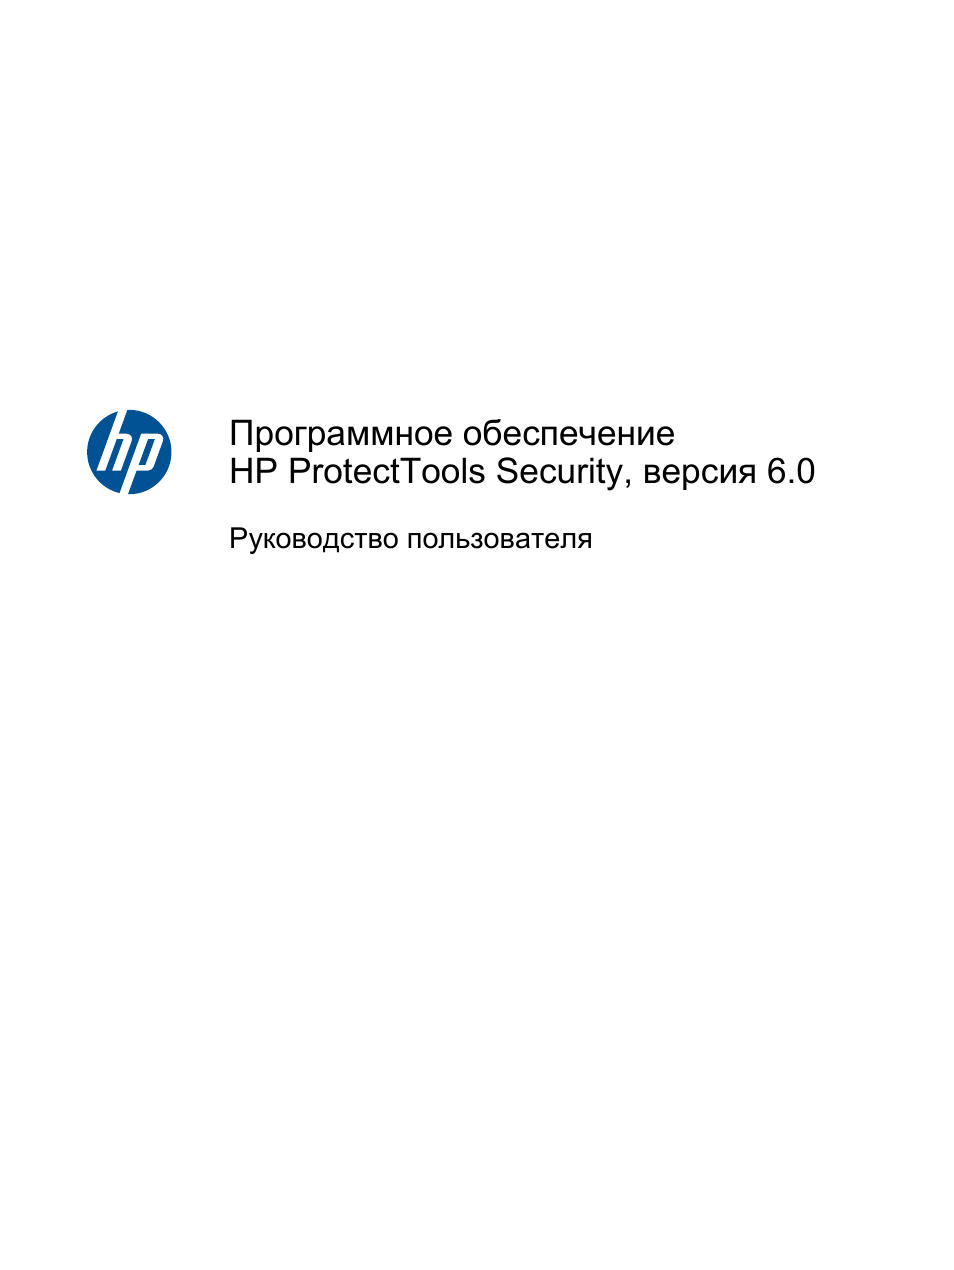 Инструкция по эксплуатации HP Программное обеспечение HP ProtectTools Security, версия 6.0 | 83 страницы